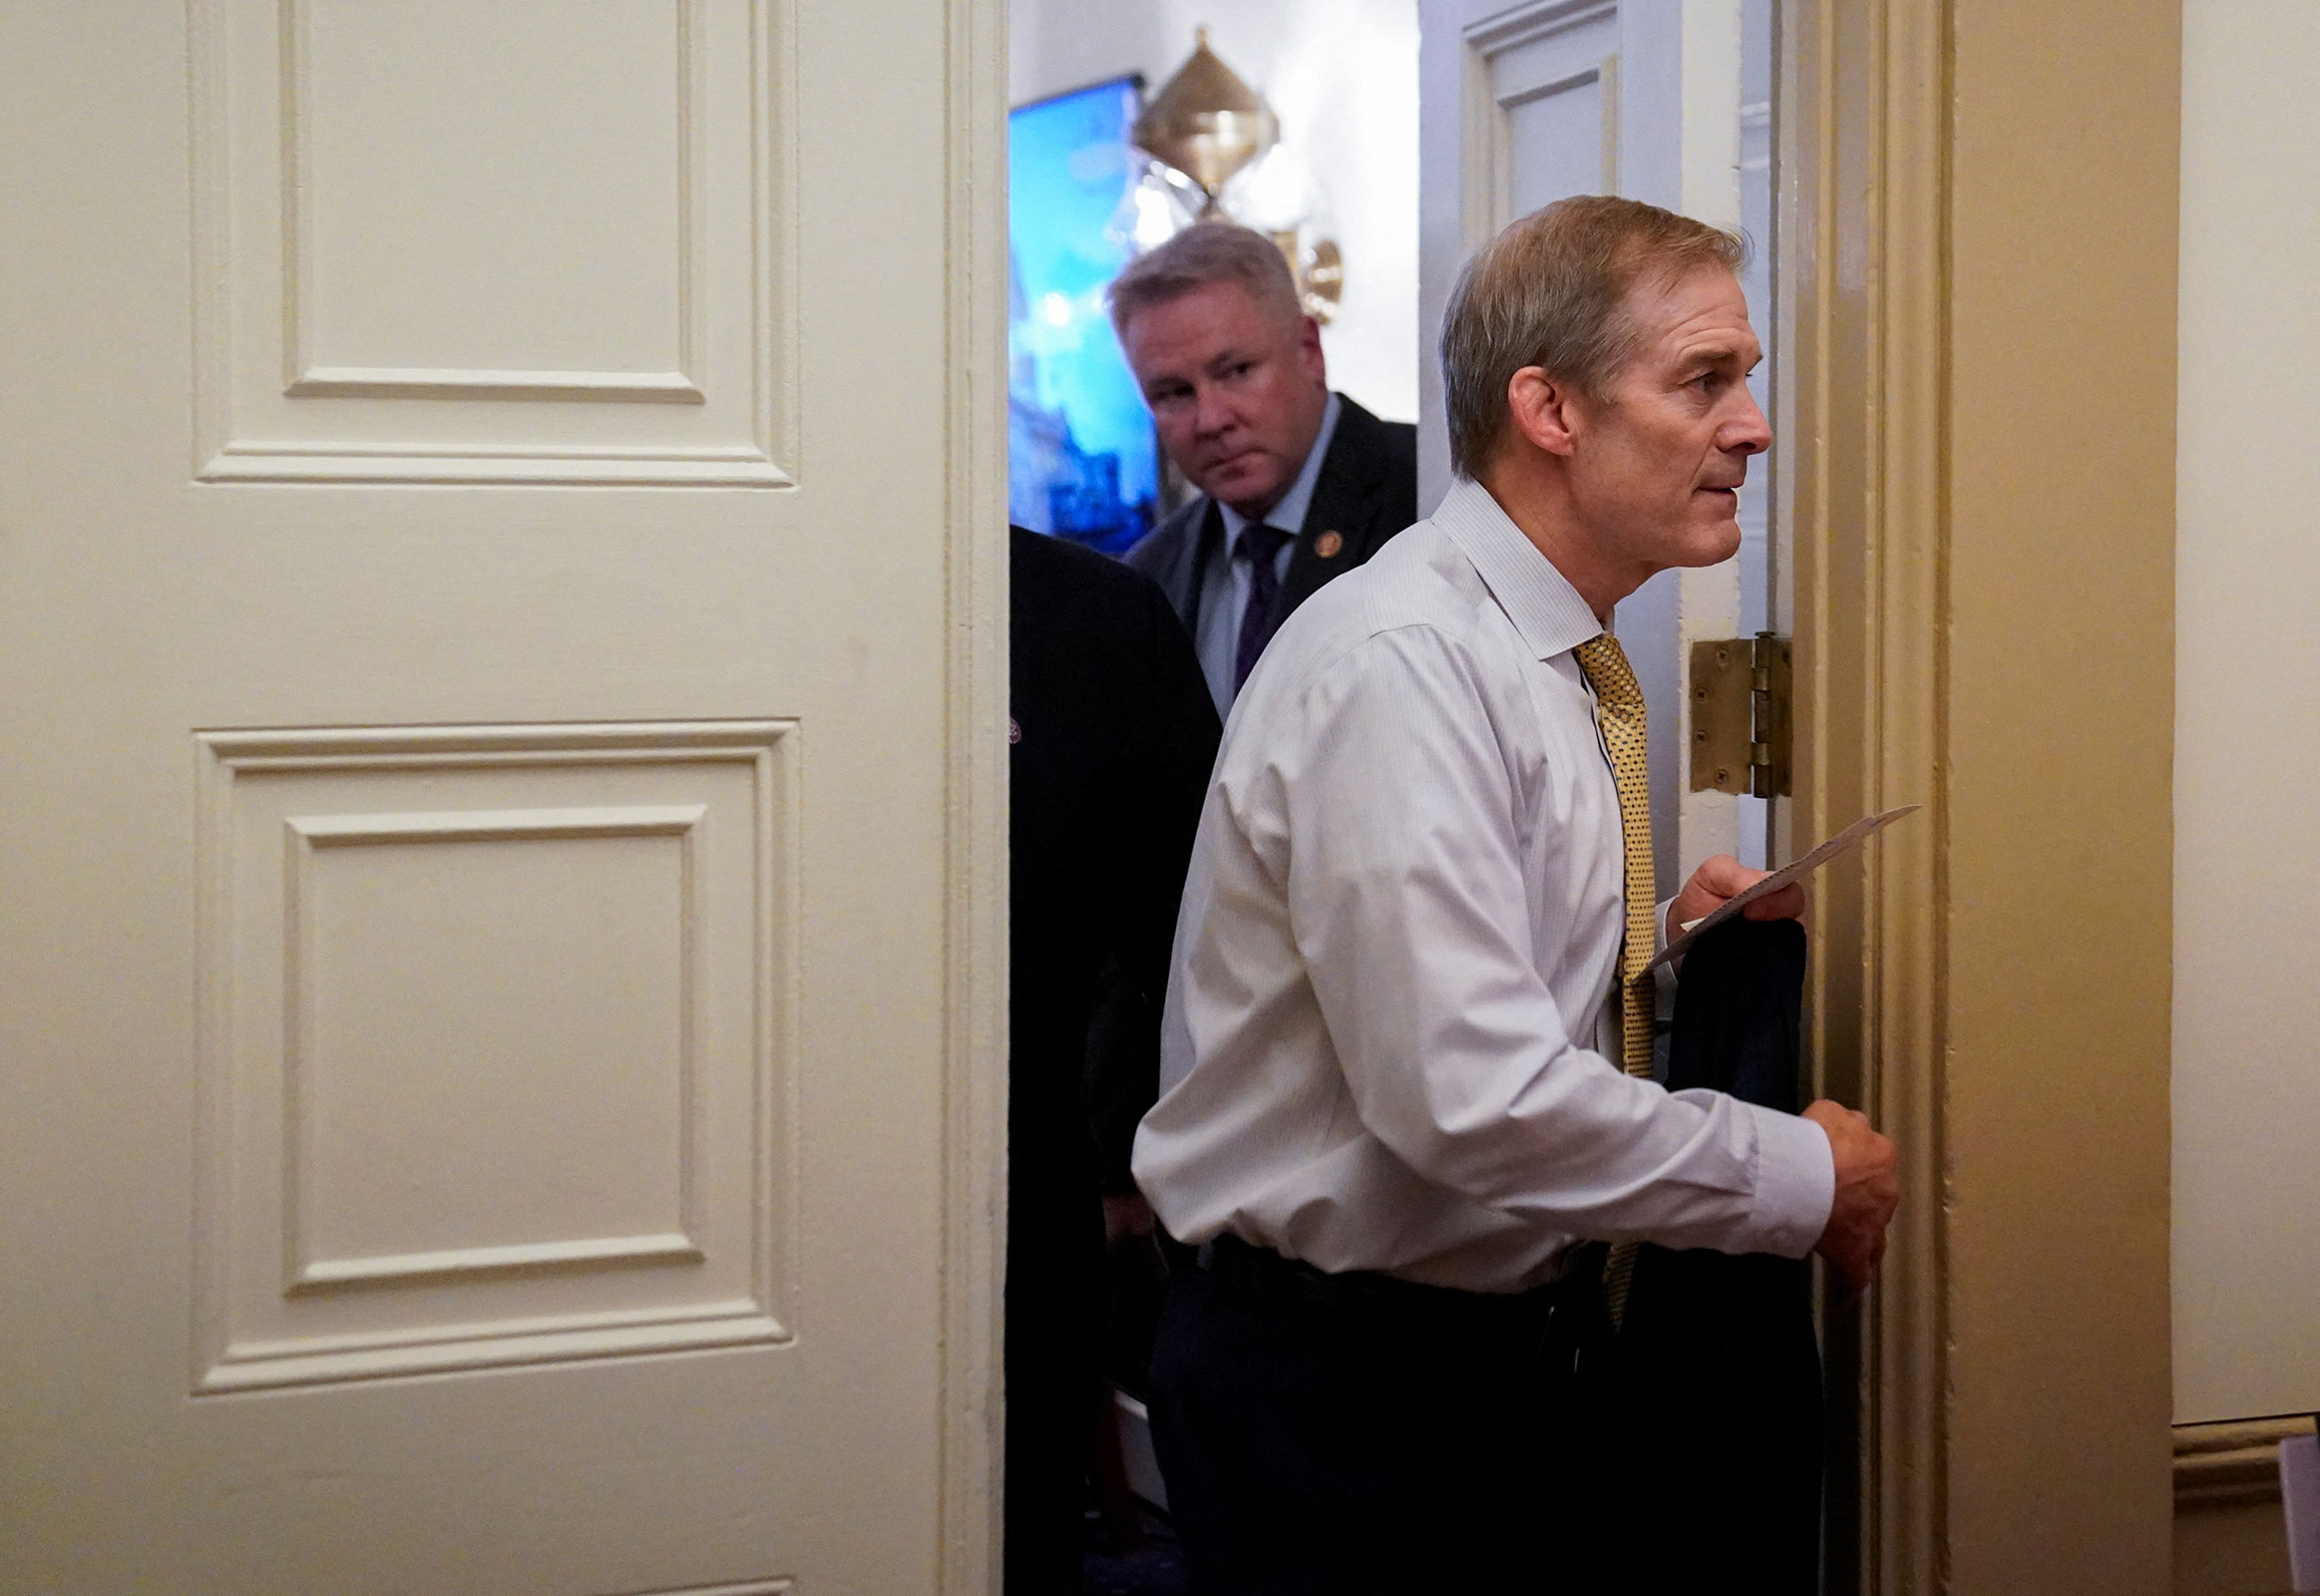 Rep. Jim Jordan leaves the office of House Majority Whip Tom Emmer on Tuesday.